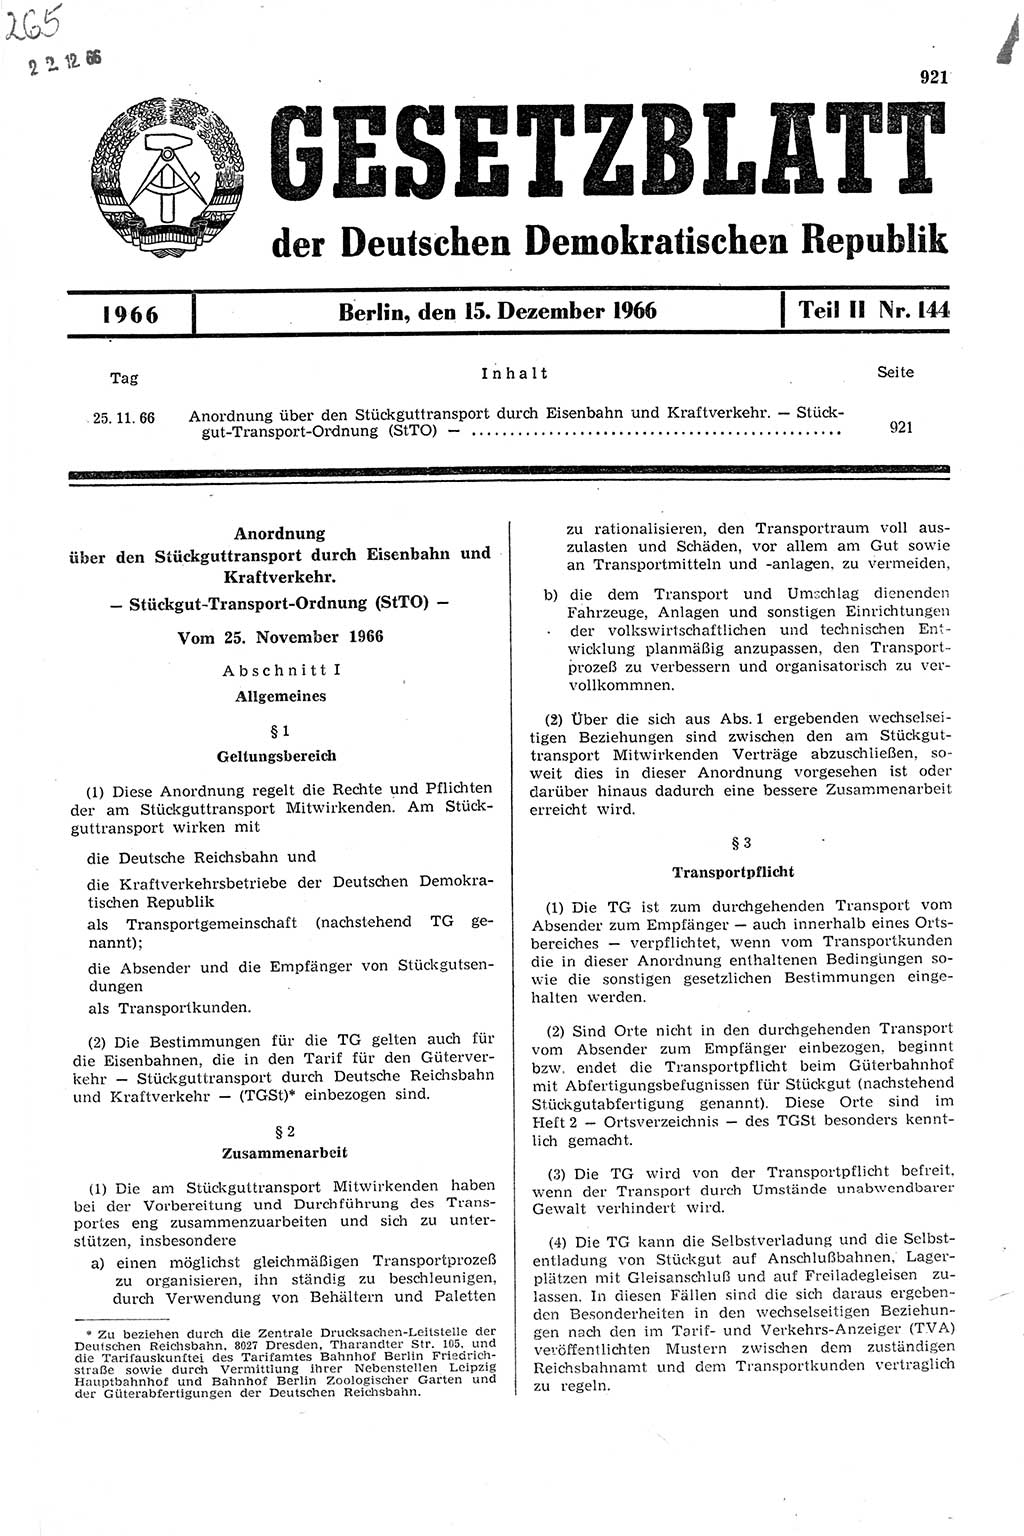 Gesetzblatt (GBl.) der Deutschen Demokratischen Republik (DDR) Teil ⅠⅠ 1966, Seite 921 (GBl. DDR ⅠⅠ 1966, S. 921)